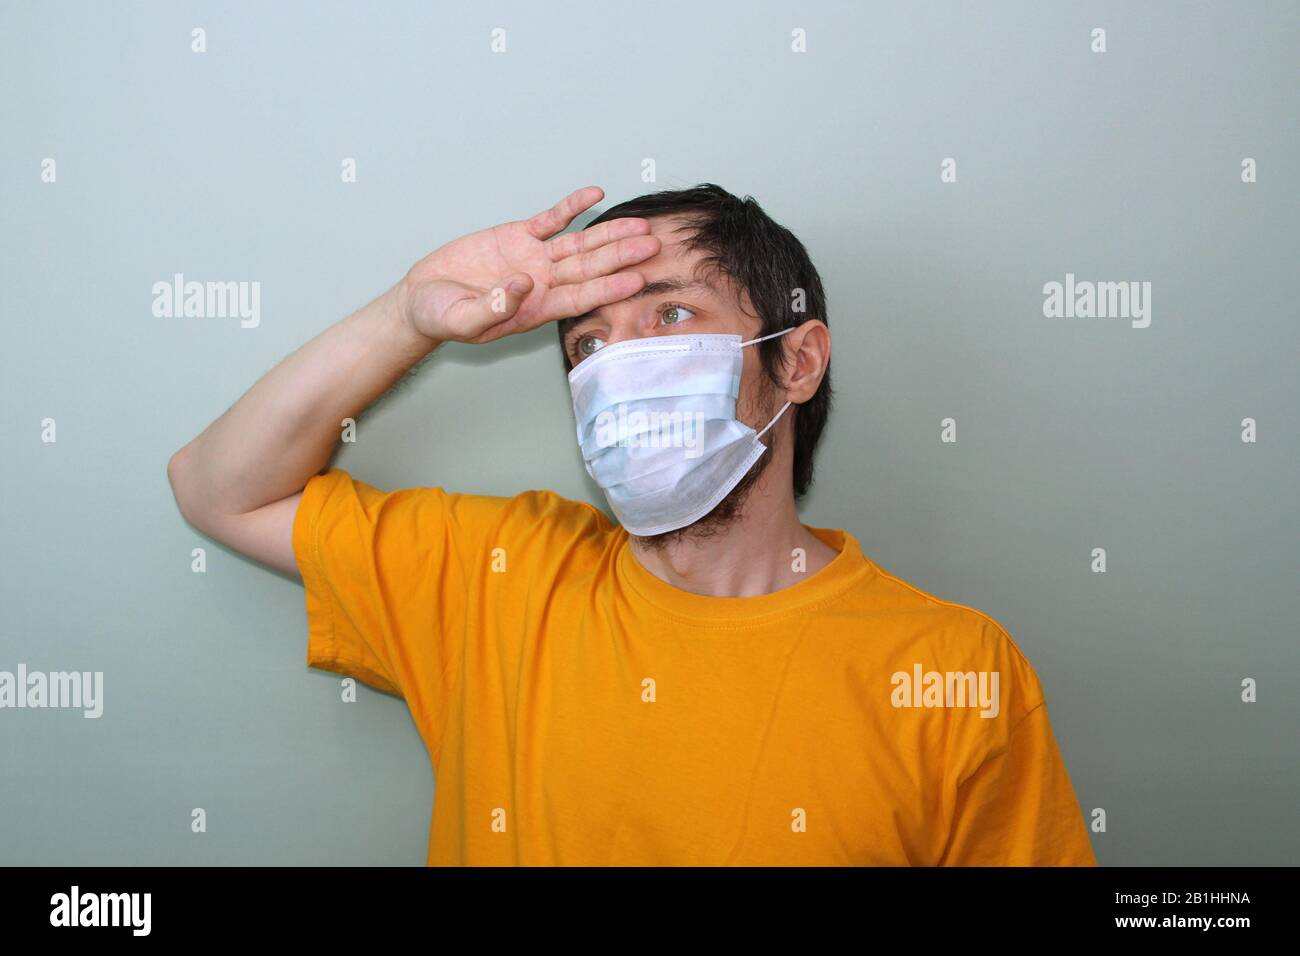 Erwachsene Männer mittleren Alters in einem gelben T-Shirt auf grauem Hintergrund in einer medizinischen Maske halten seine Hand nahe seiner Stirn. Kopfschmerzen, hohes Fieber. Krankheitsschutz Coronavirus epidemisches Problem aus China. Stockfoto